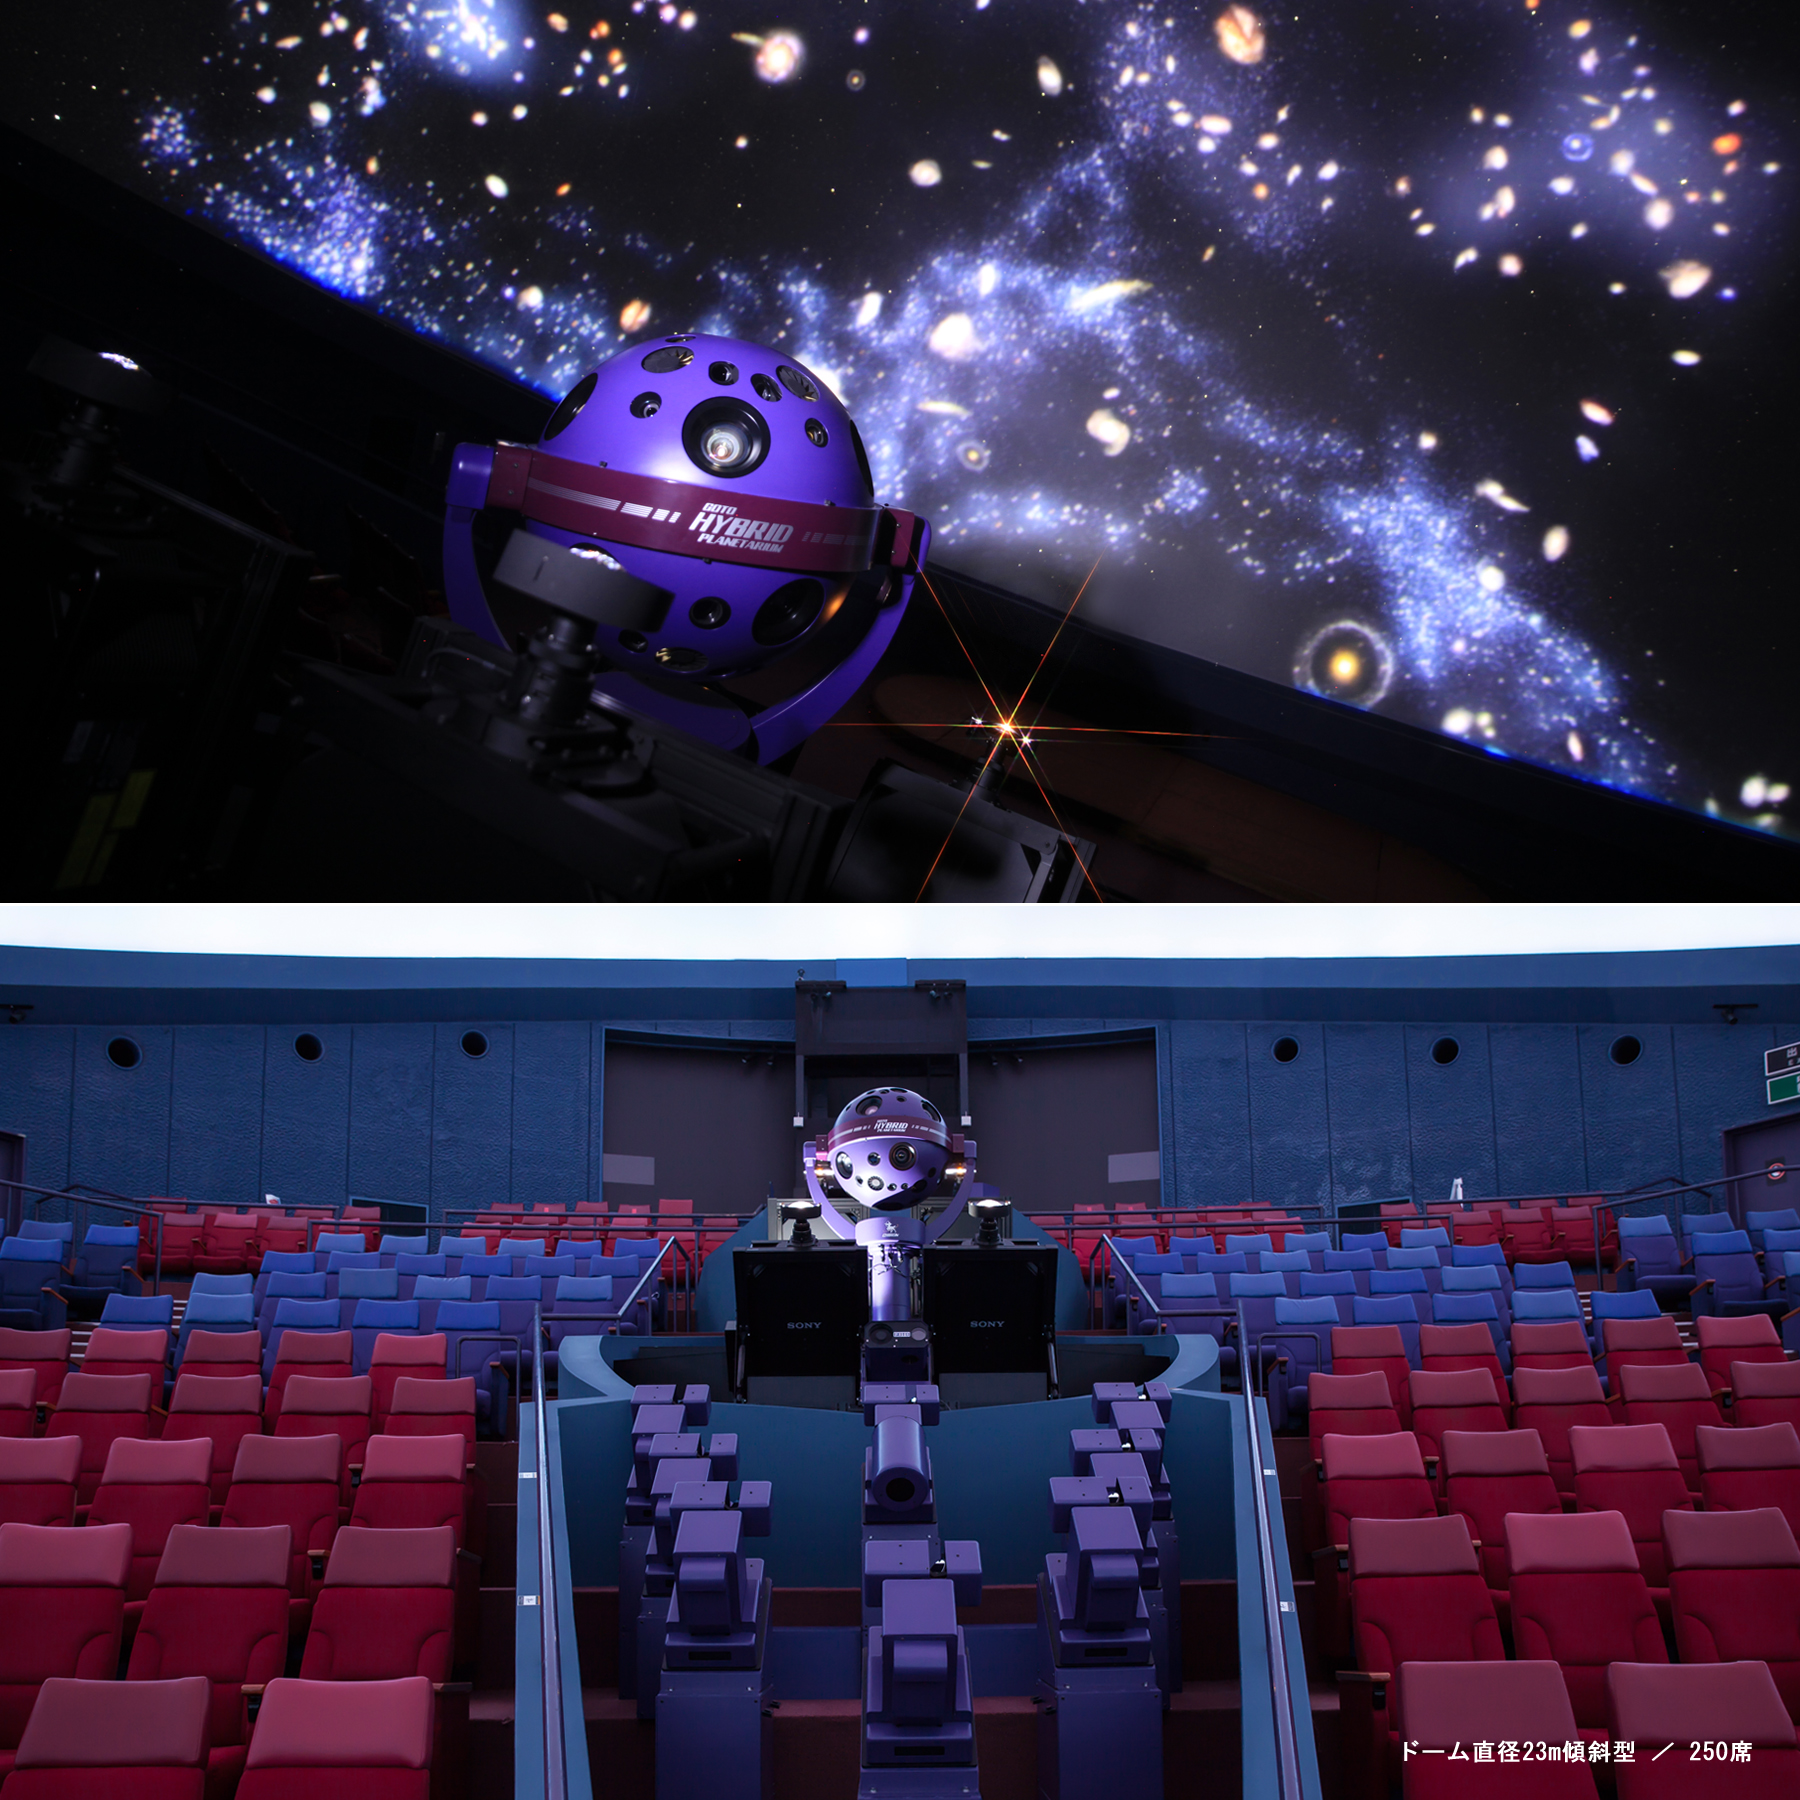 さいたま市青少年宇宙科学館のプラネタリウムがリニューアル高精細で色彩豊かな映像投映を実現 株式会社 五藤光学研究所